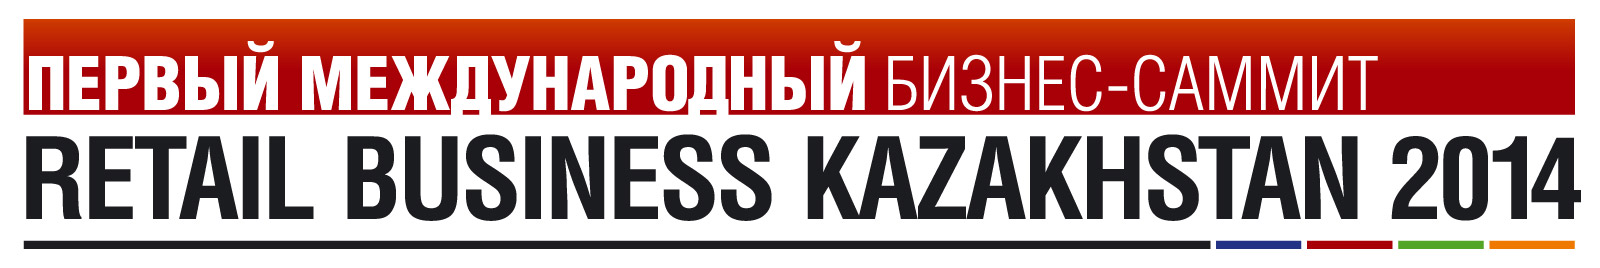 Первый Международный бизнес-саммит Retail Business Kazakhstan 2014